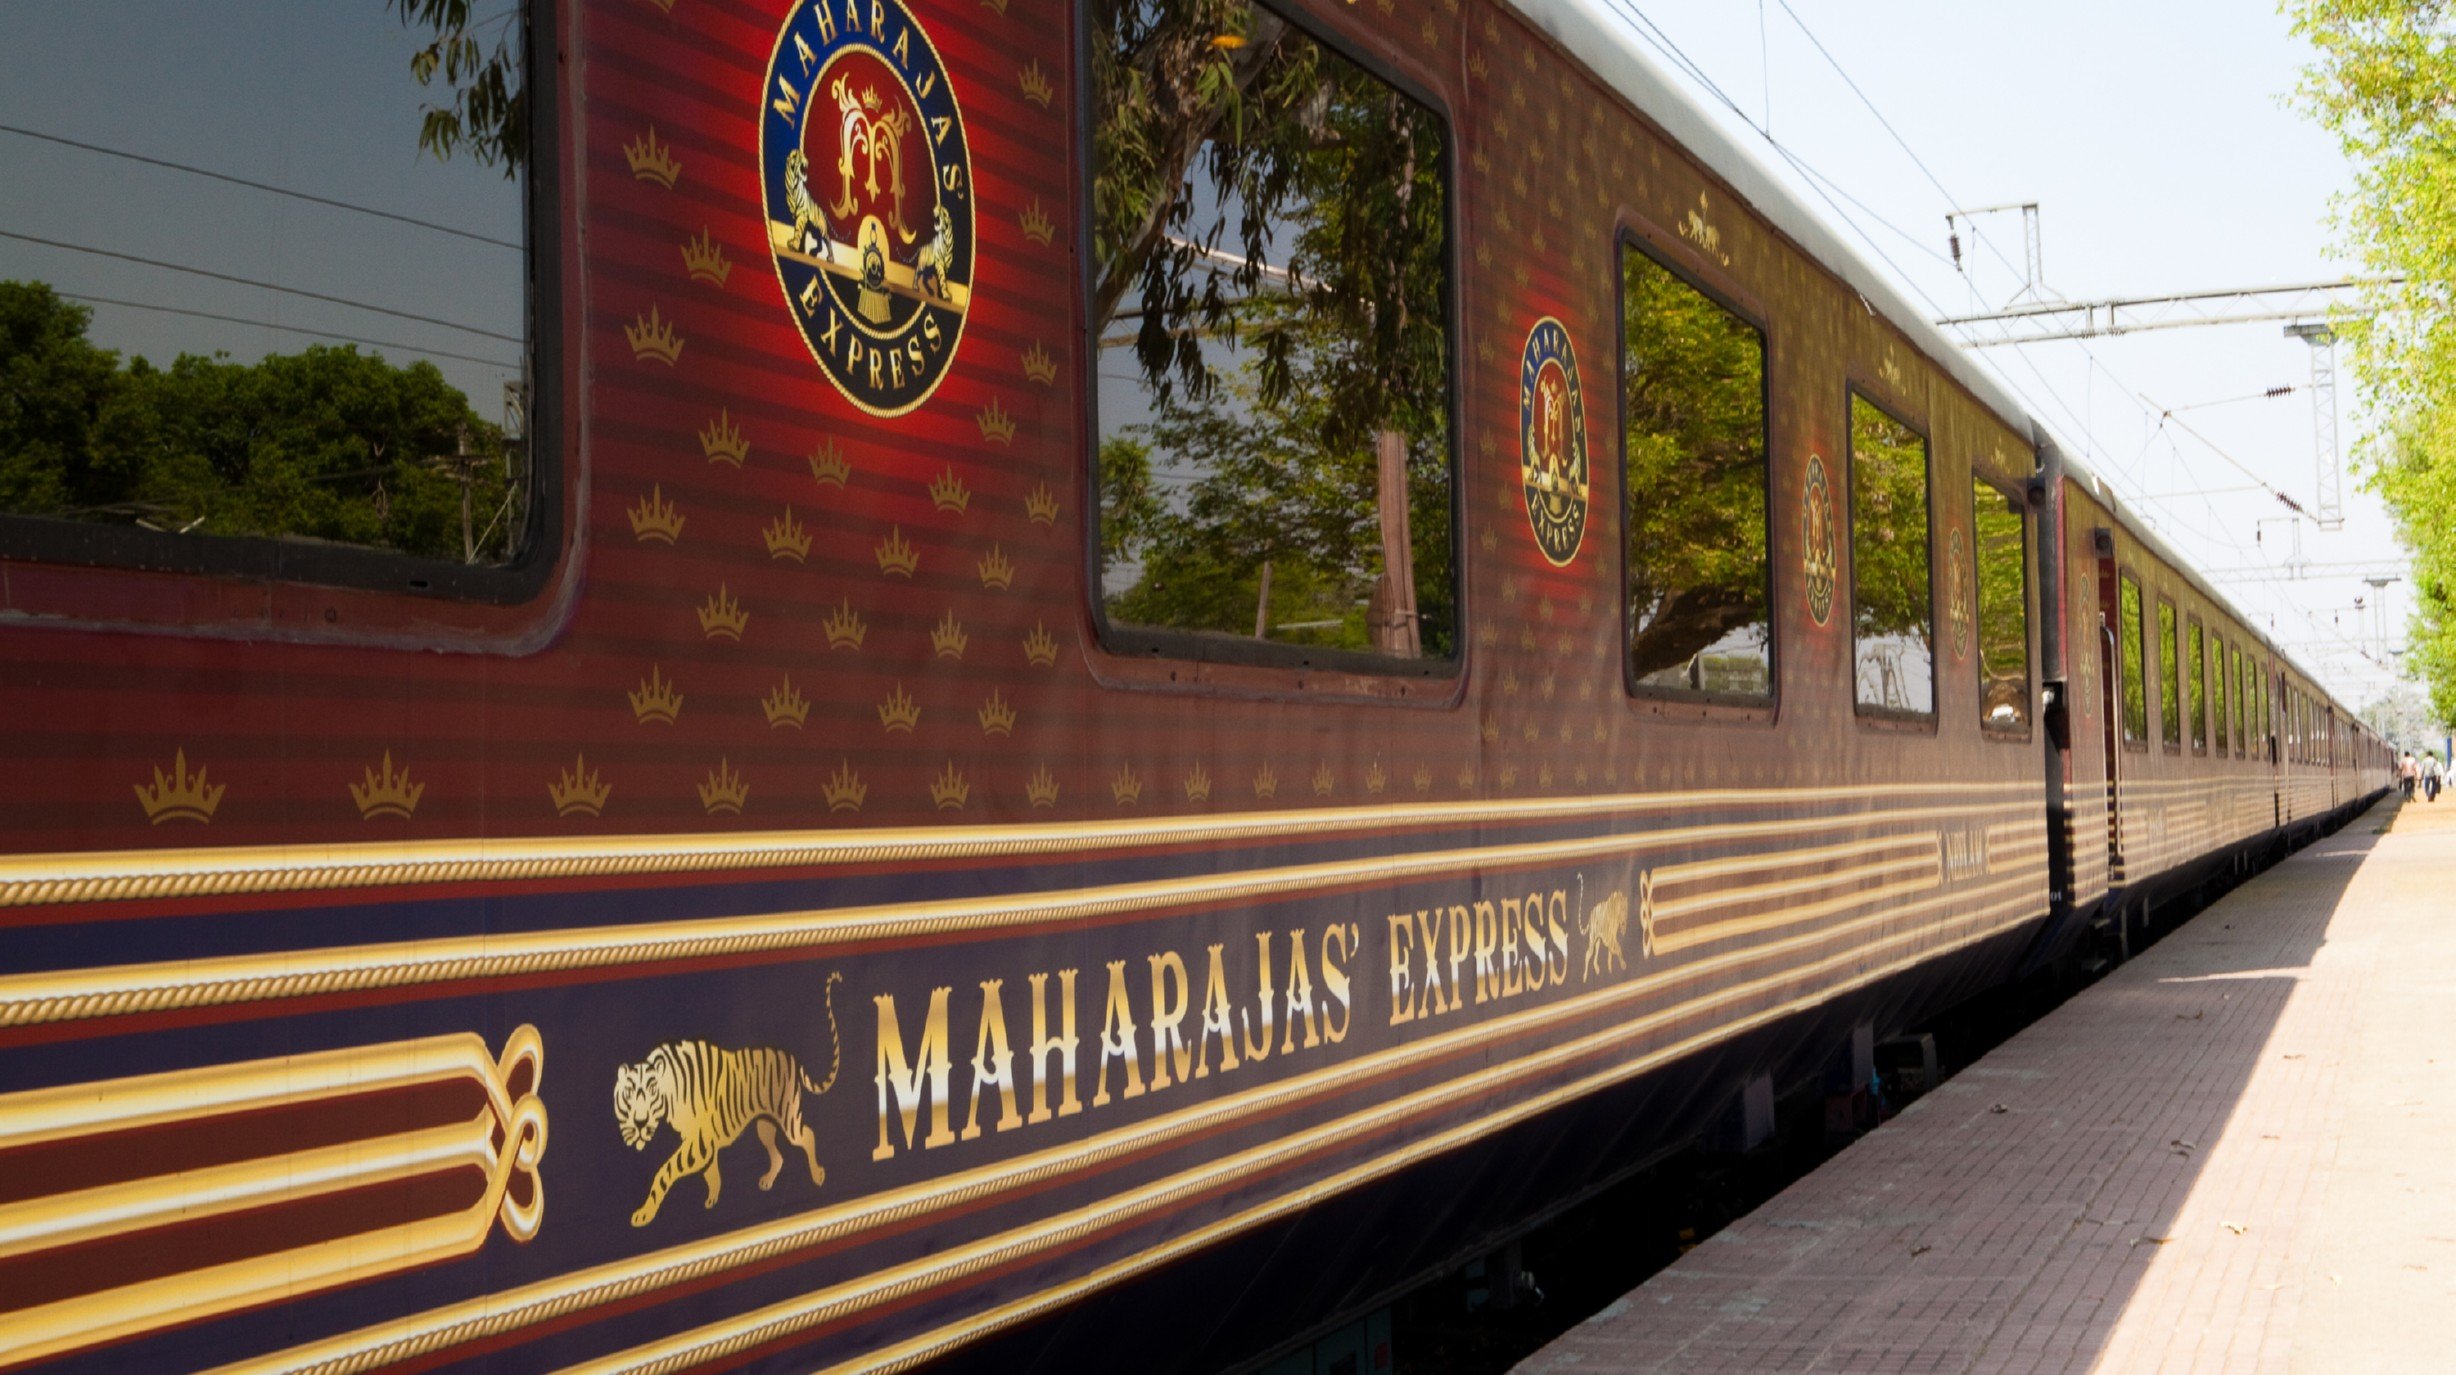 Maharajas Express exterieur (3)